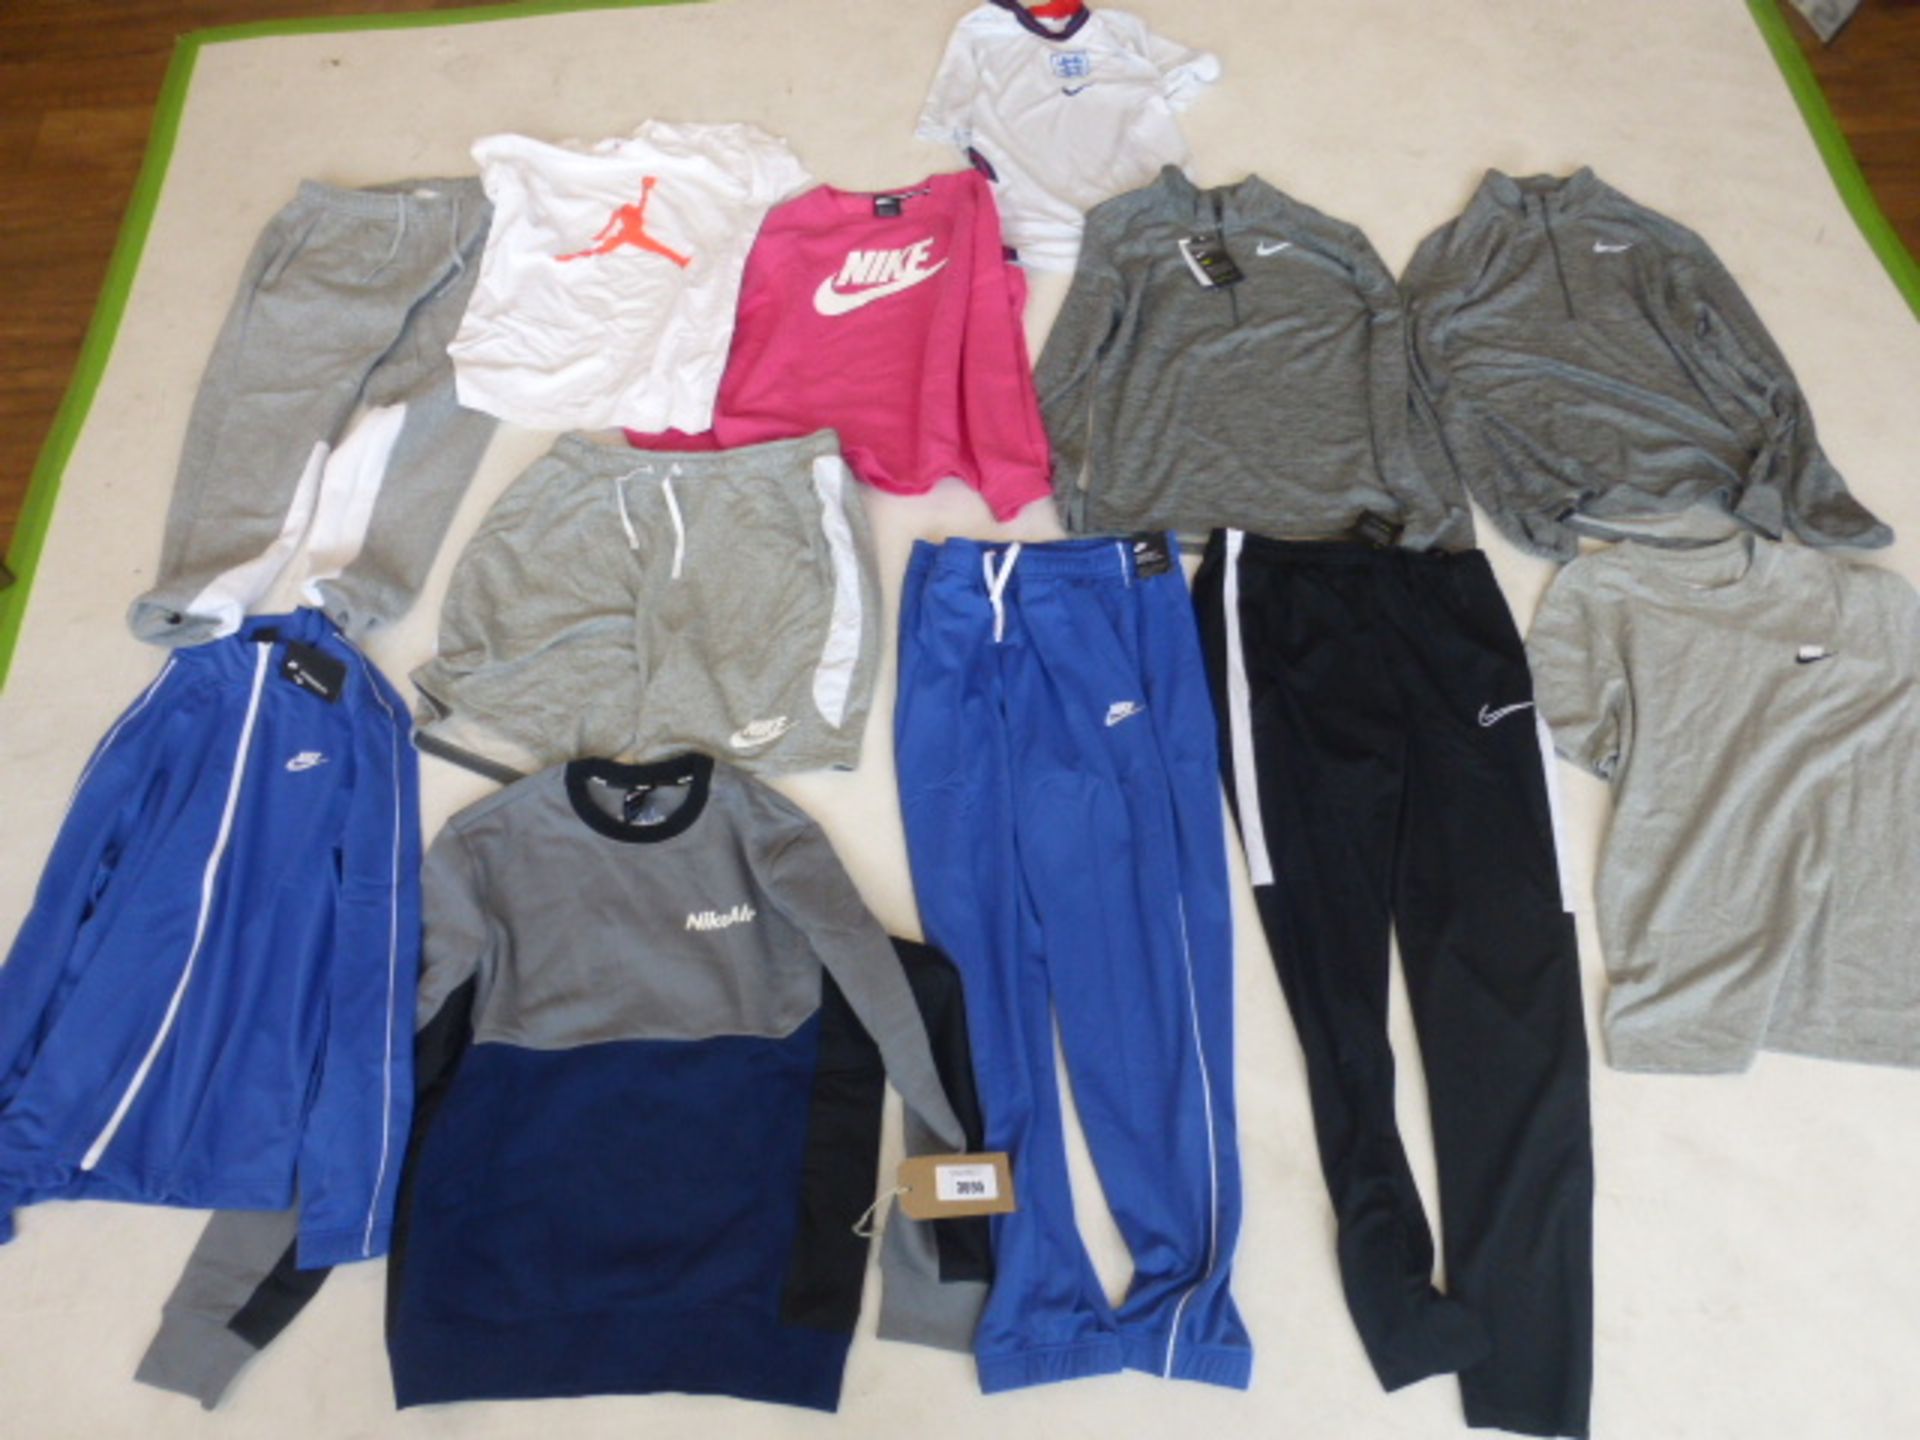 Selection of Nike sportswear